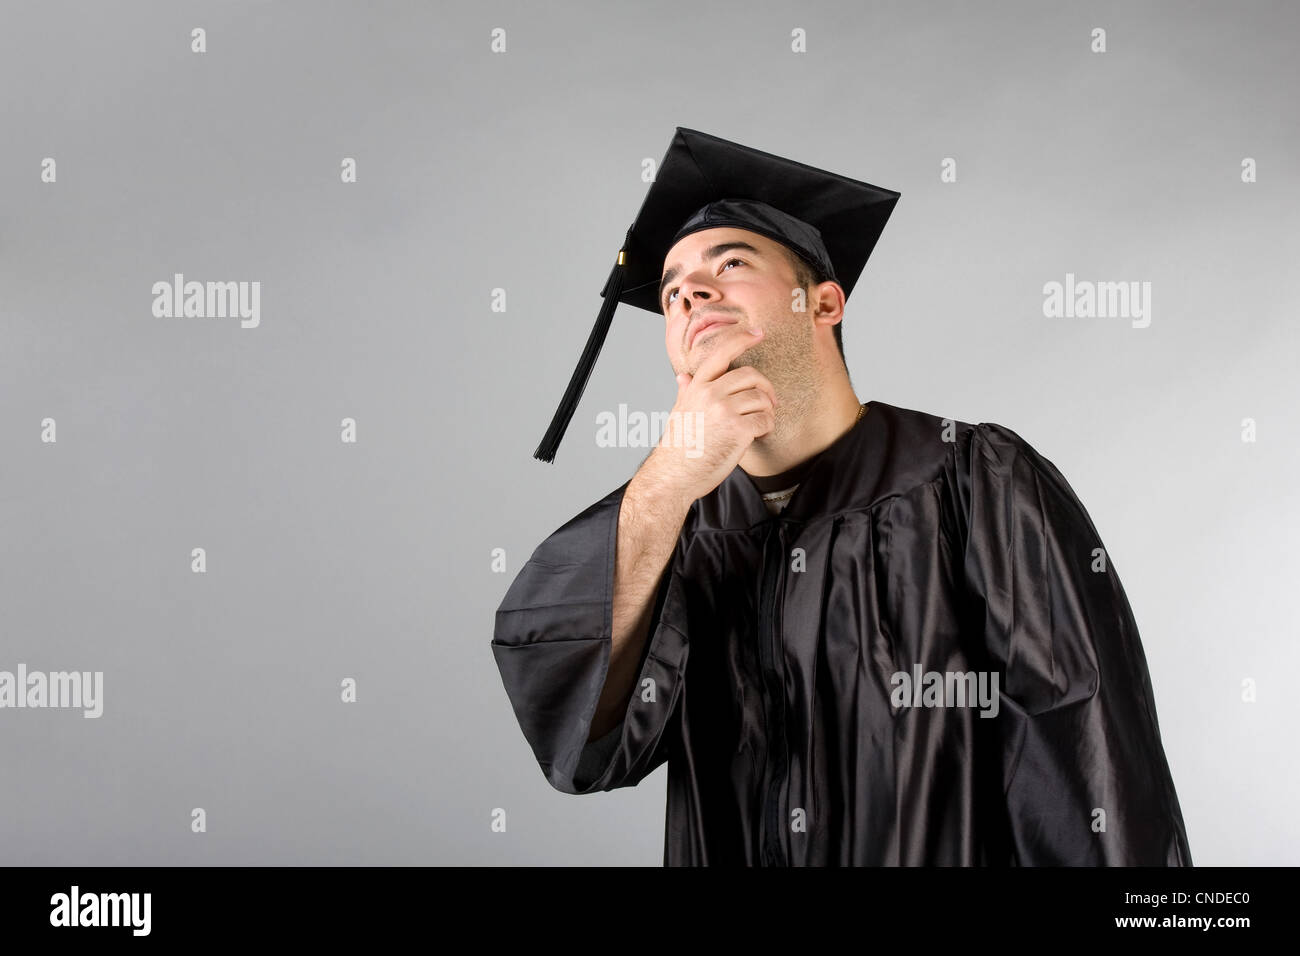 Eine jüngste College oder High School Diplom-Mütze und Kleid denken und kontemplativen Blick. Stockfoto